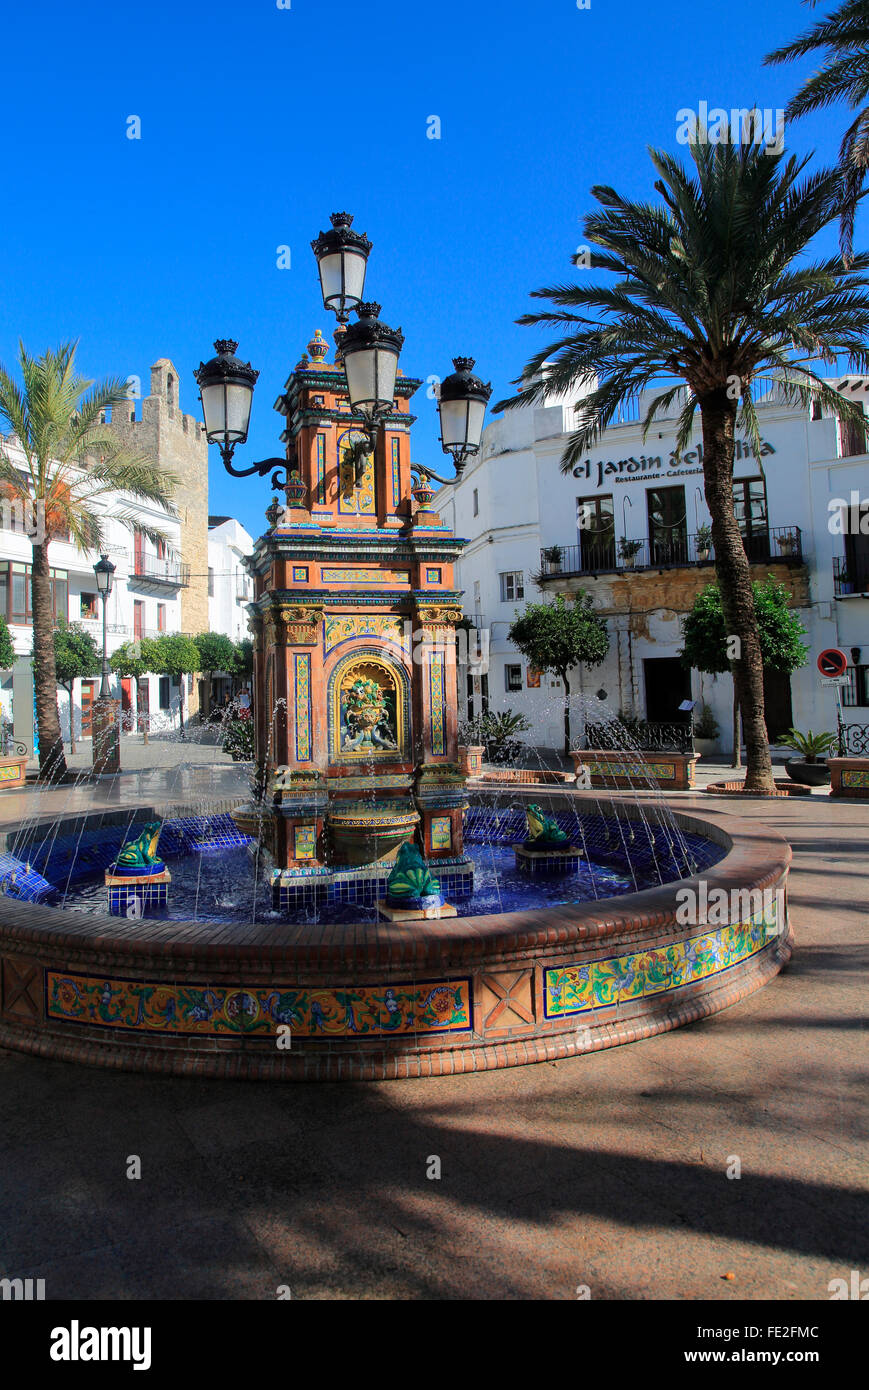 Fontana e le palme in Plaza de Espana, Vejer de la Frontera, la provincia di Cadiz Cadice, Spagna Foto Stock